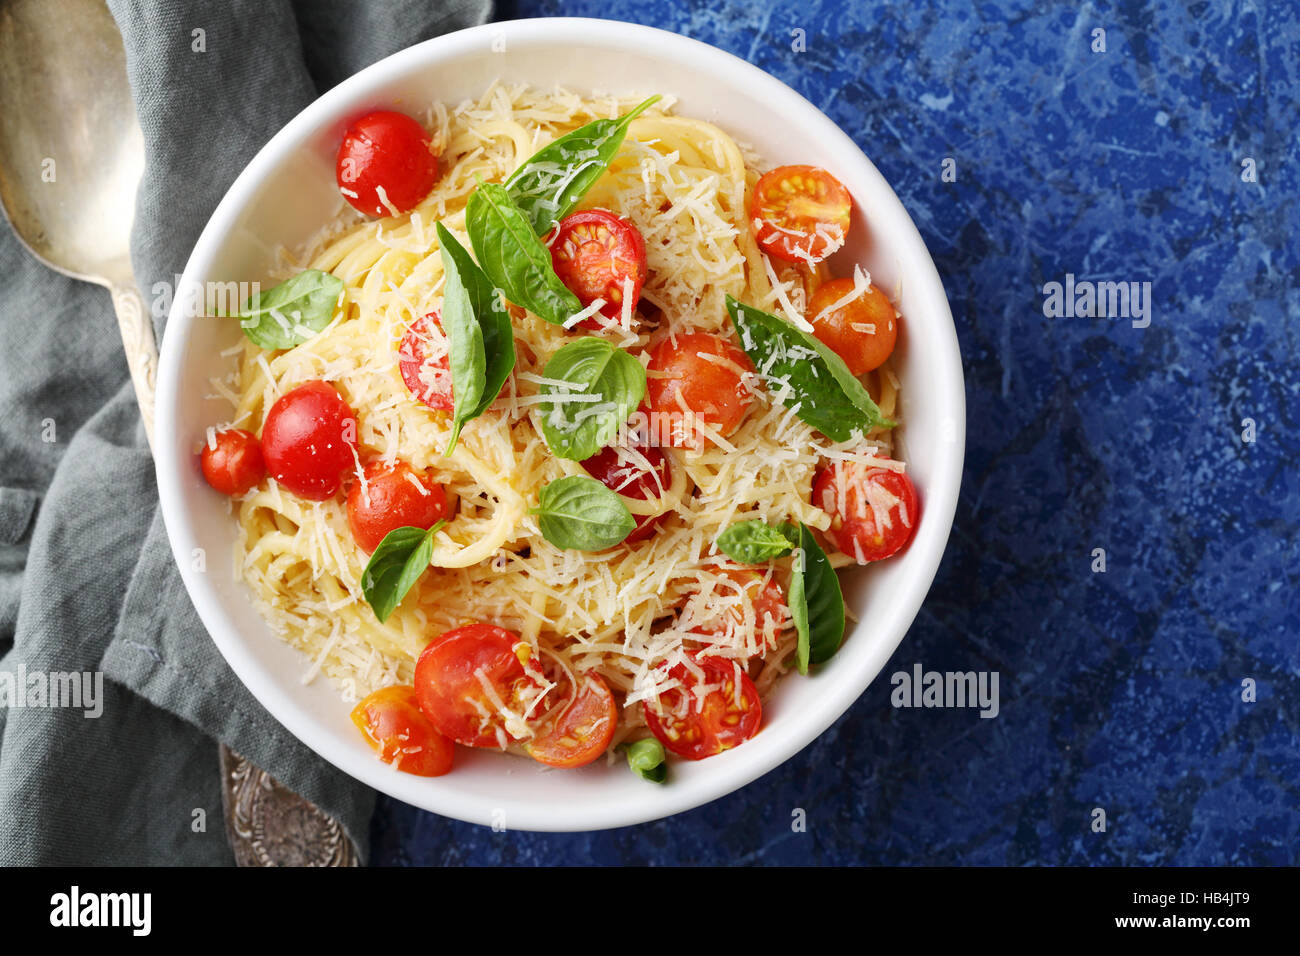 Tasty spaghetti with fresh tomato, food top view Stock Photo